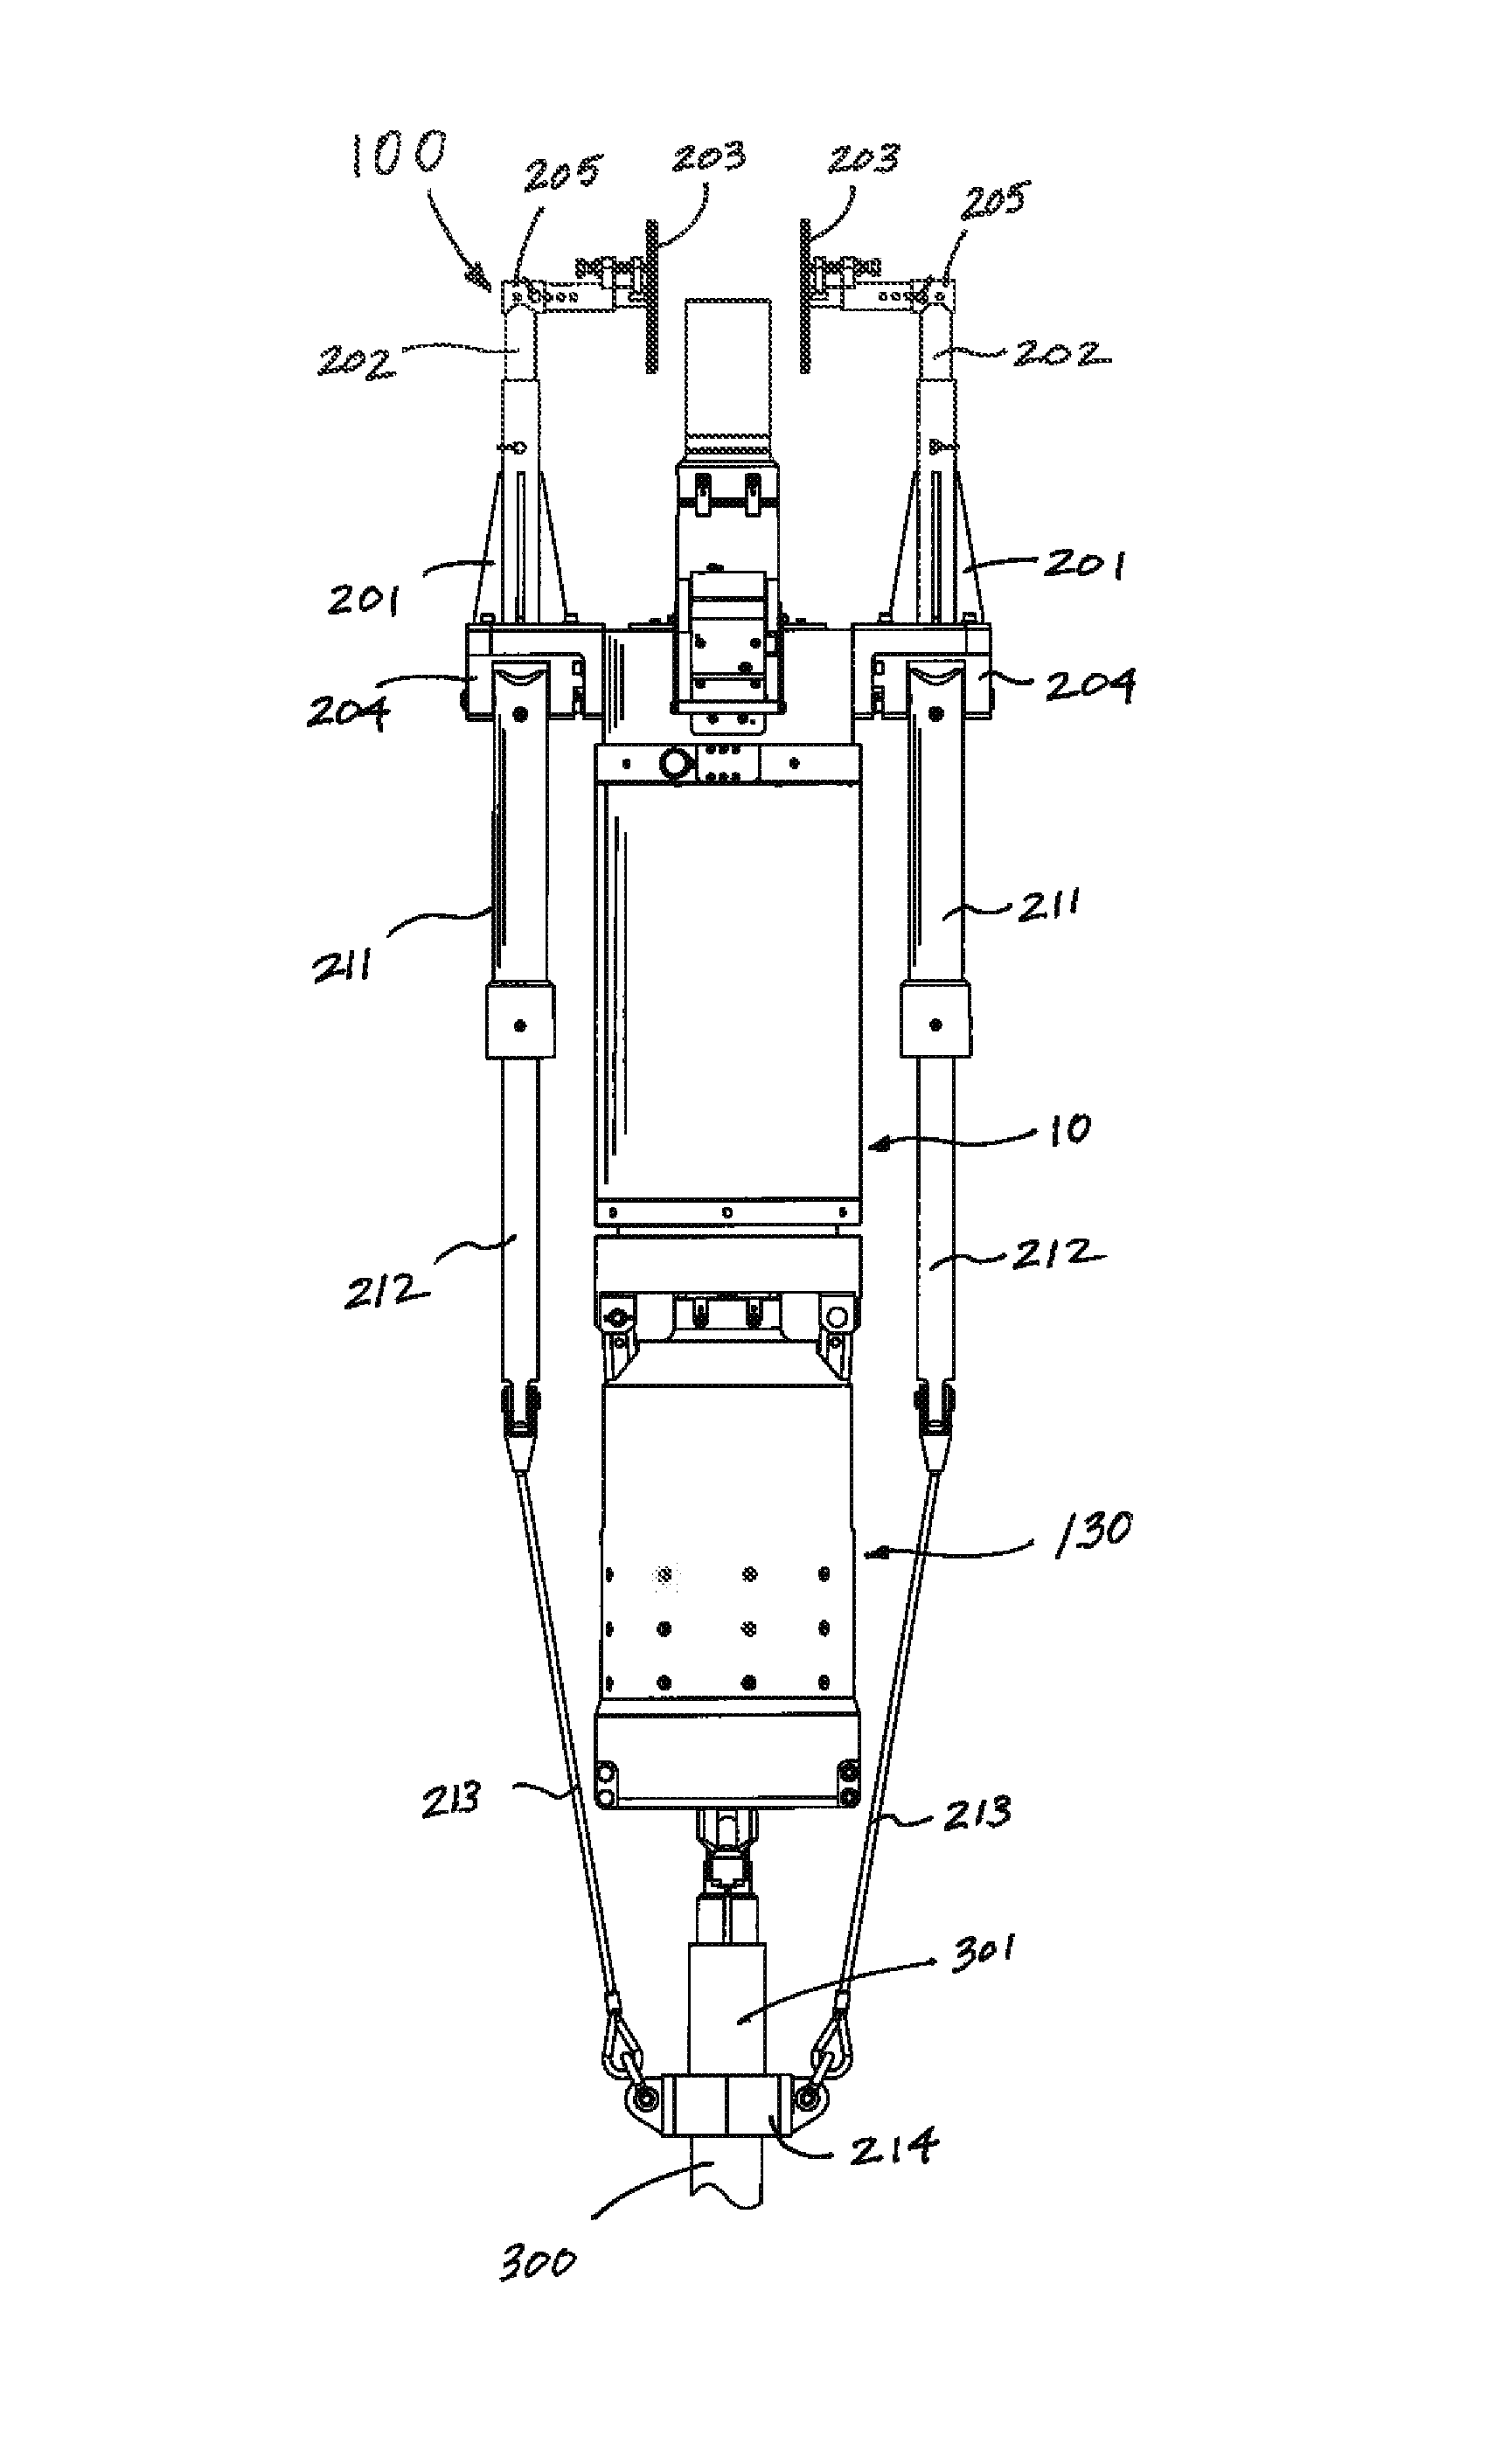 Modular apparatus for assembling tubular goods